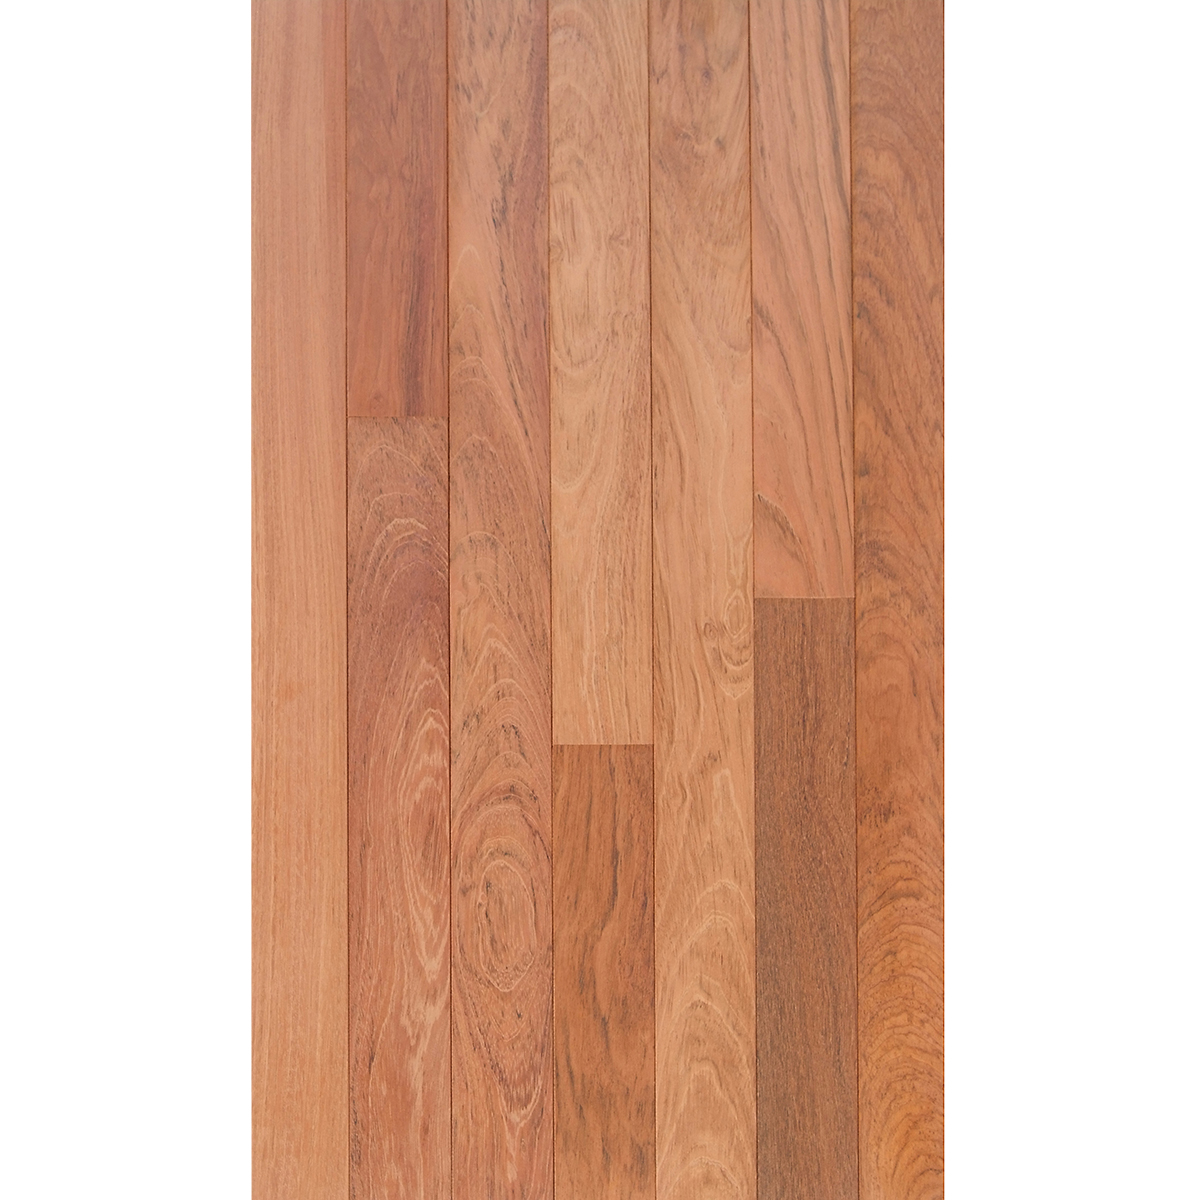 Brazilian Cherry 3 4 X Select Grade, 3 4 Inch Brazilian Cherry Hardwood Floor